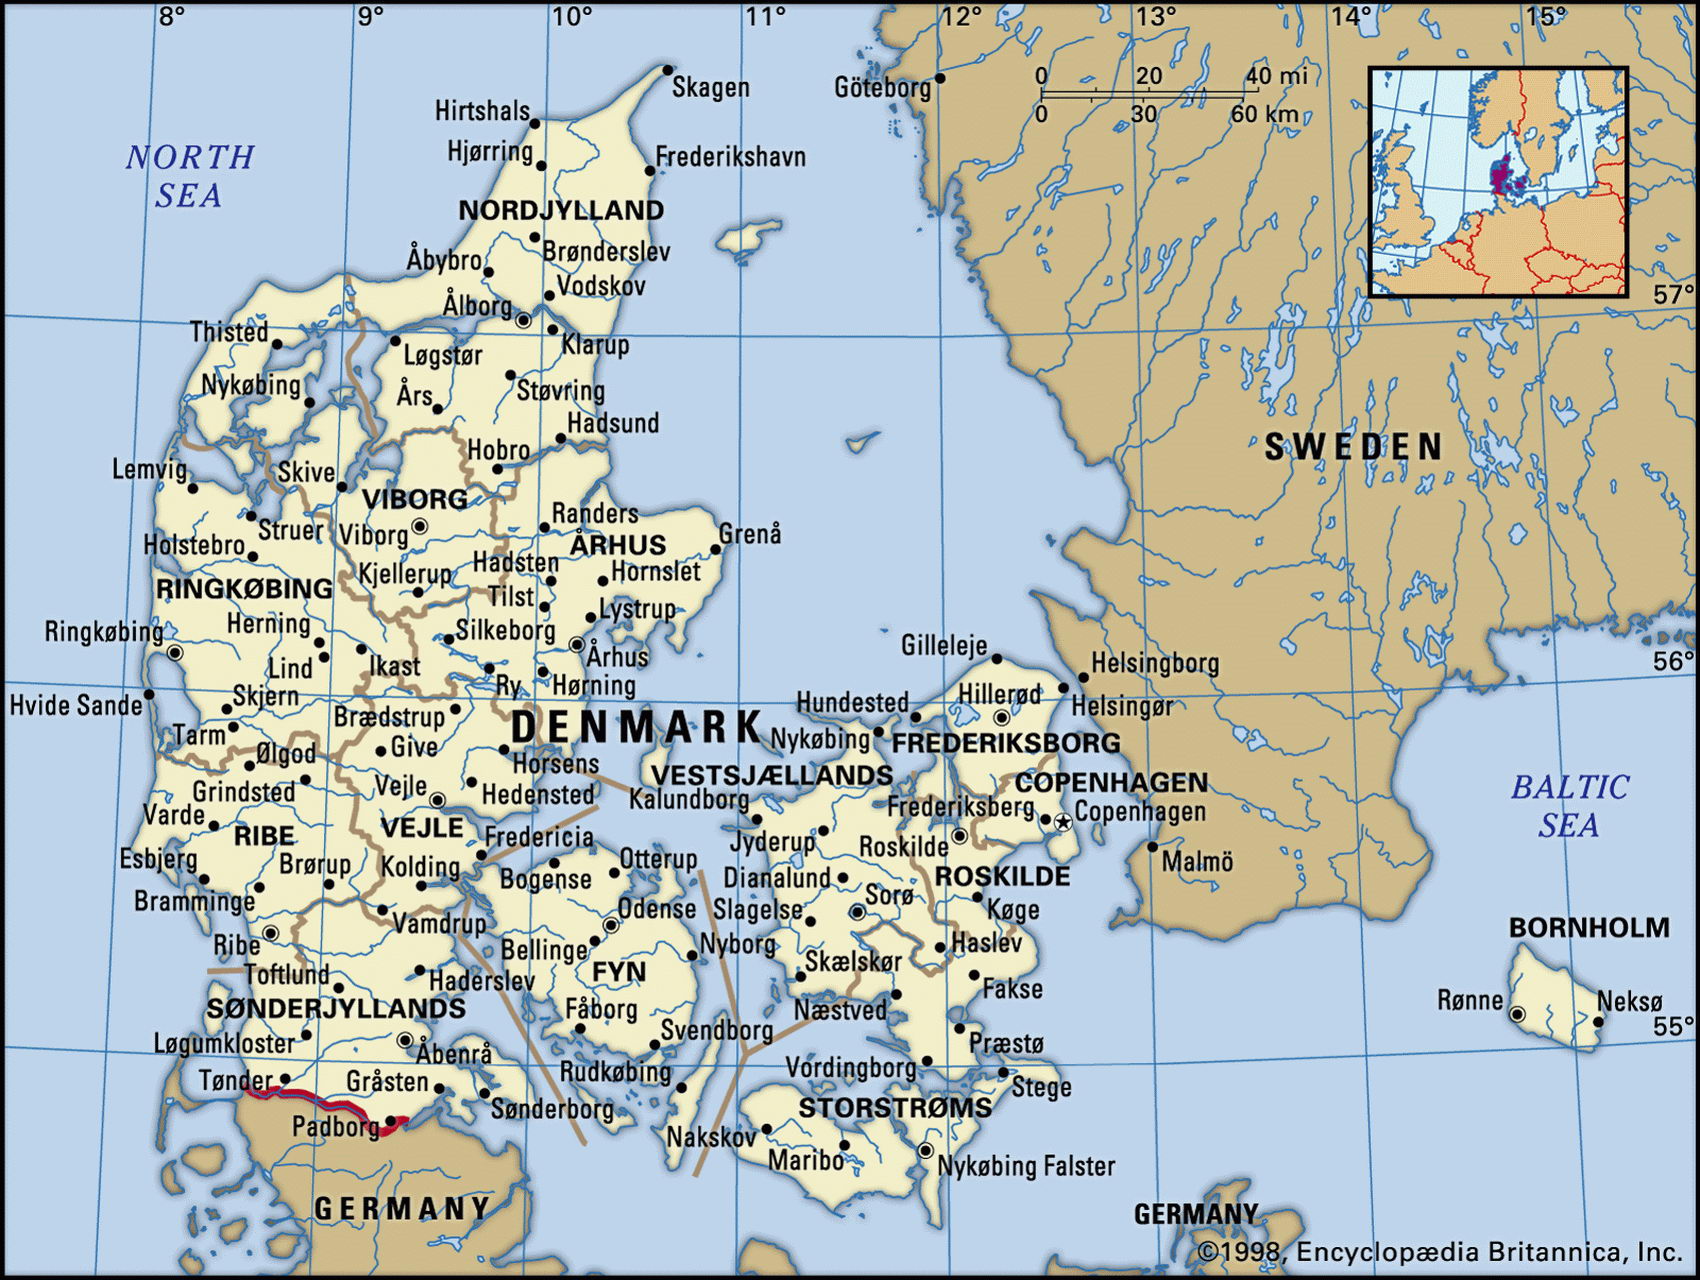 Detailed Map Of Denmark